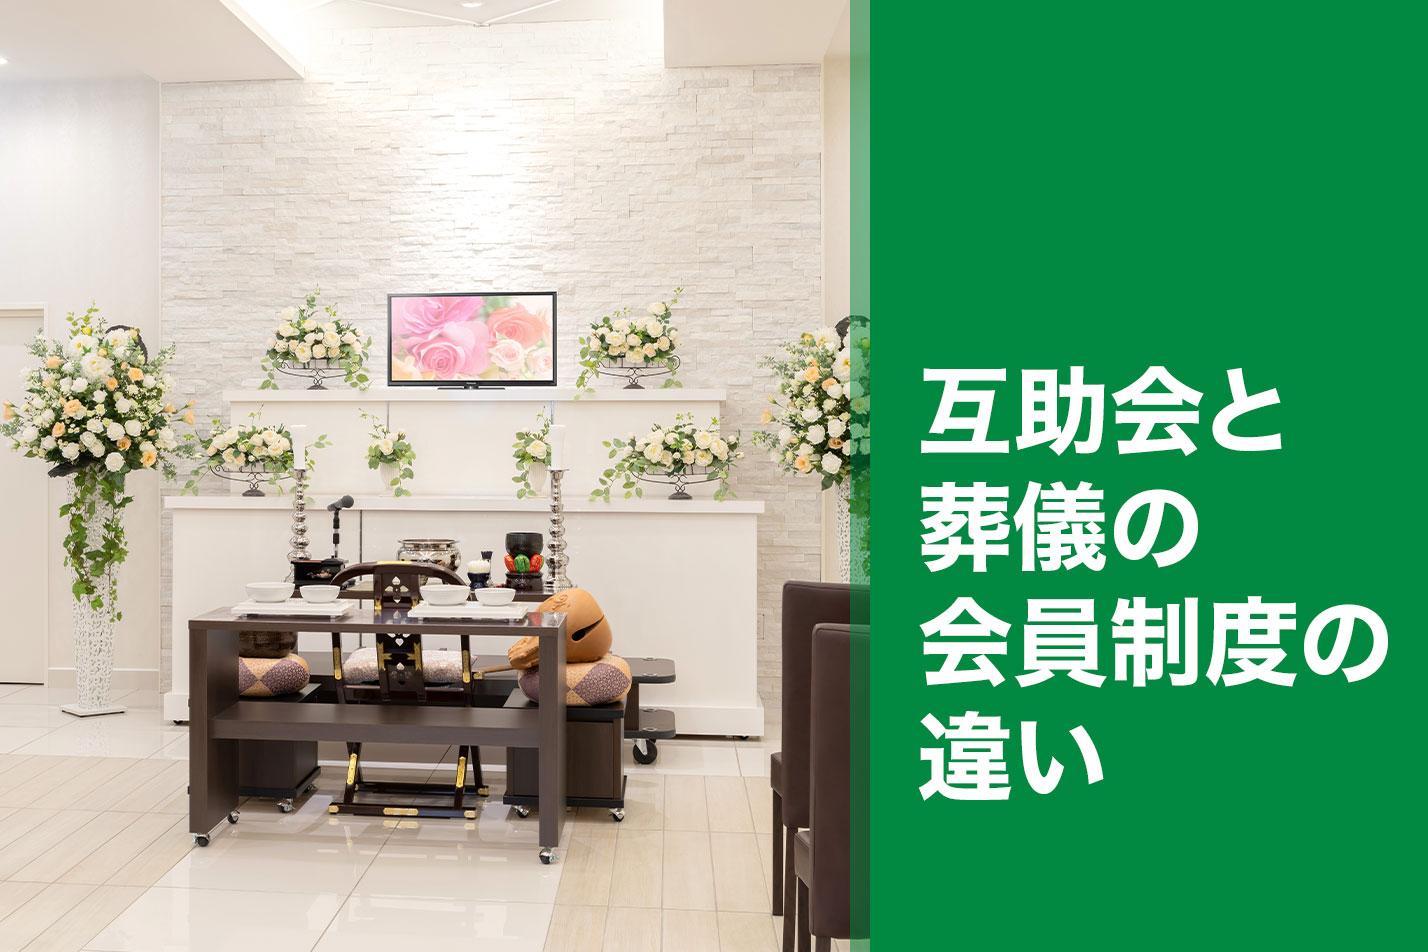 【掛川市】互助会と葬儀の会員制度の違いのイメージ画像